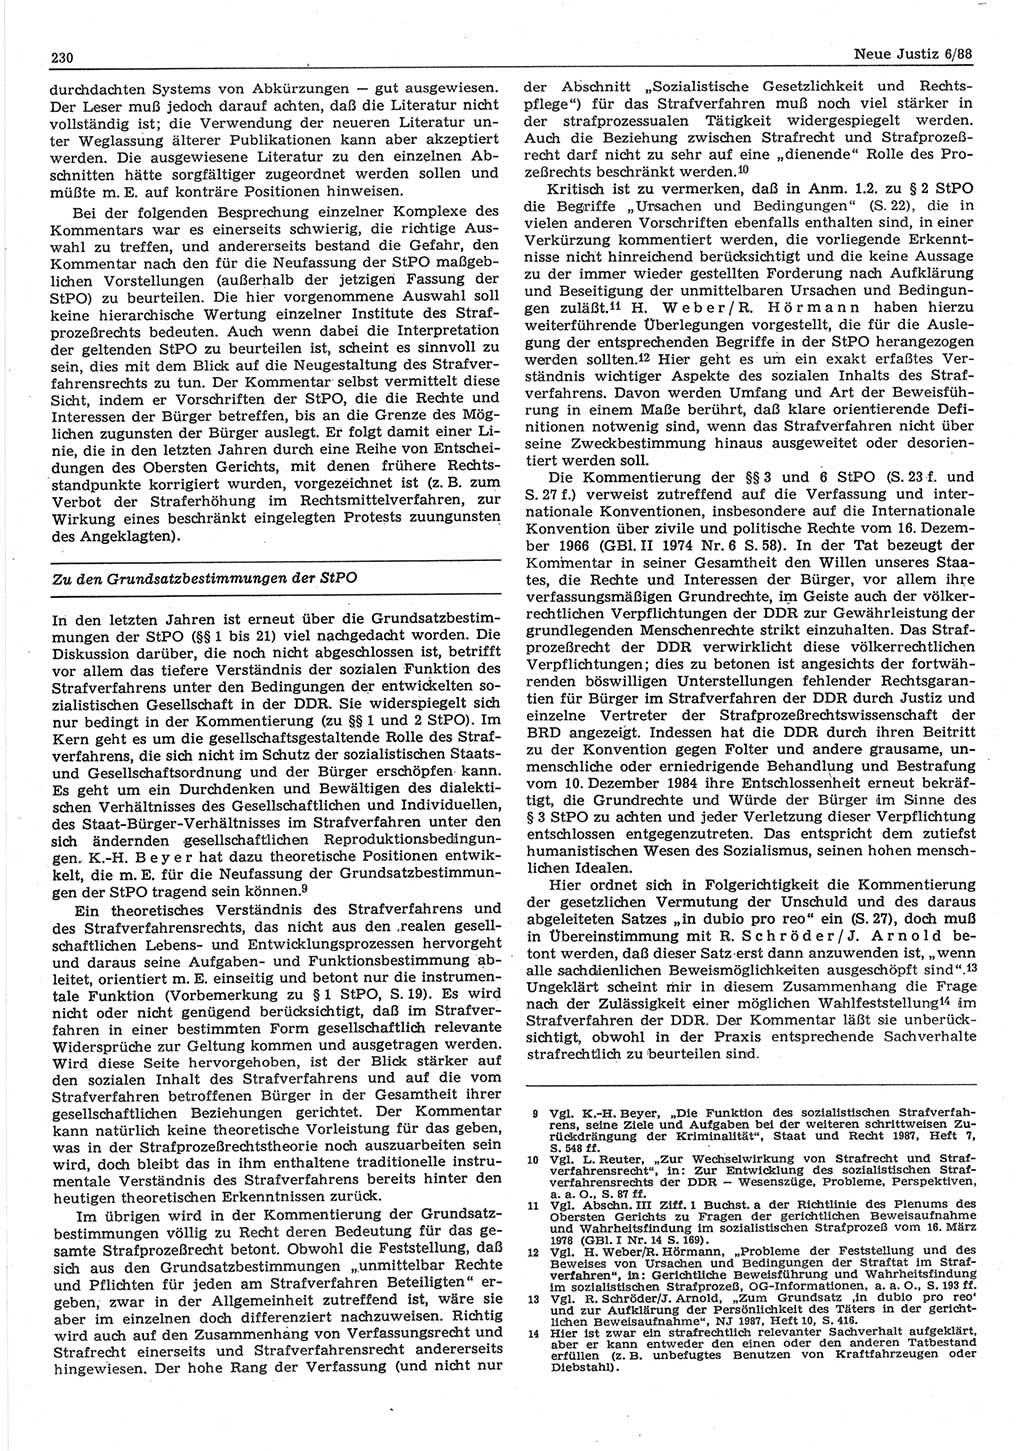 Neue Justiz (NJ), Zeitschrift für sozialistisches Recht und Gesetzlichkeit [Deutsche Demokratische Republik (DDR)], 42. Jahrgang 1988, Seite 230 (NJ DDR 1988, S. 230)